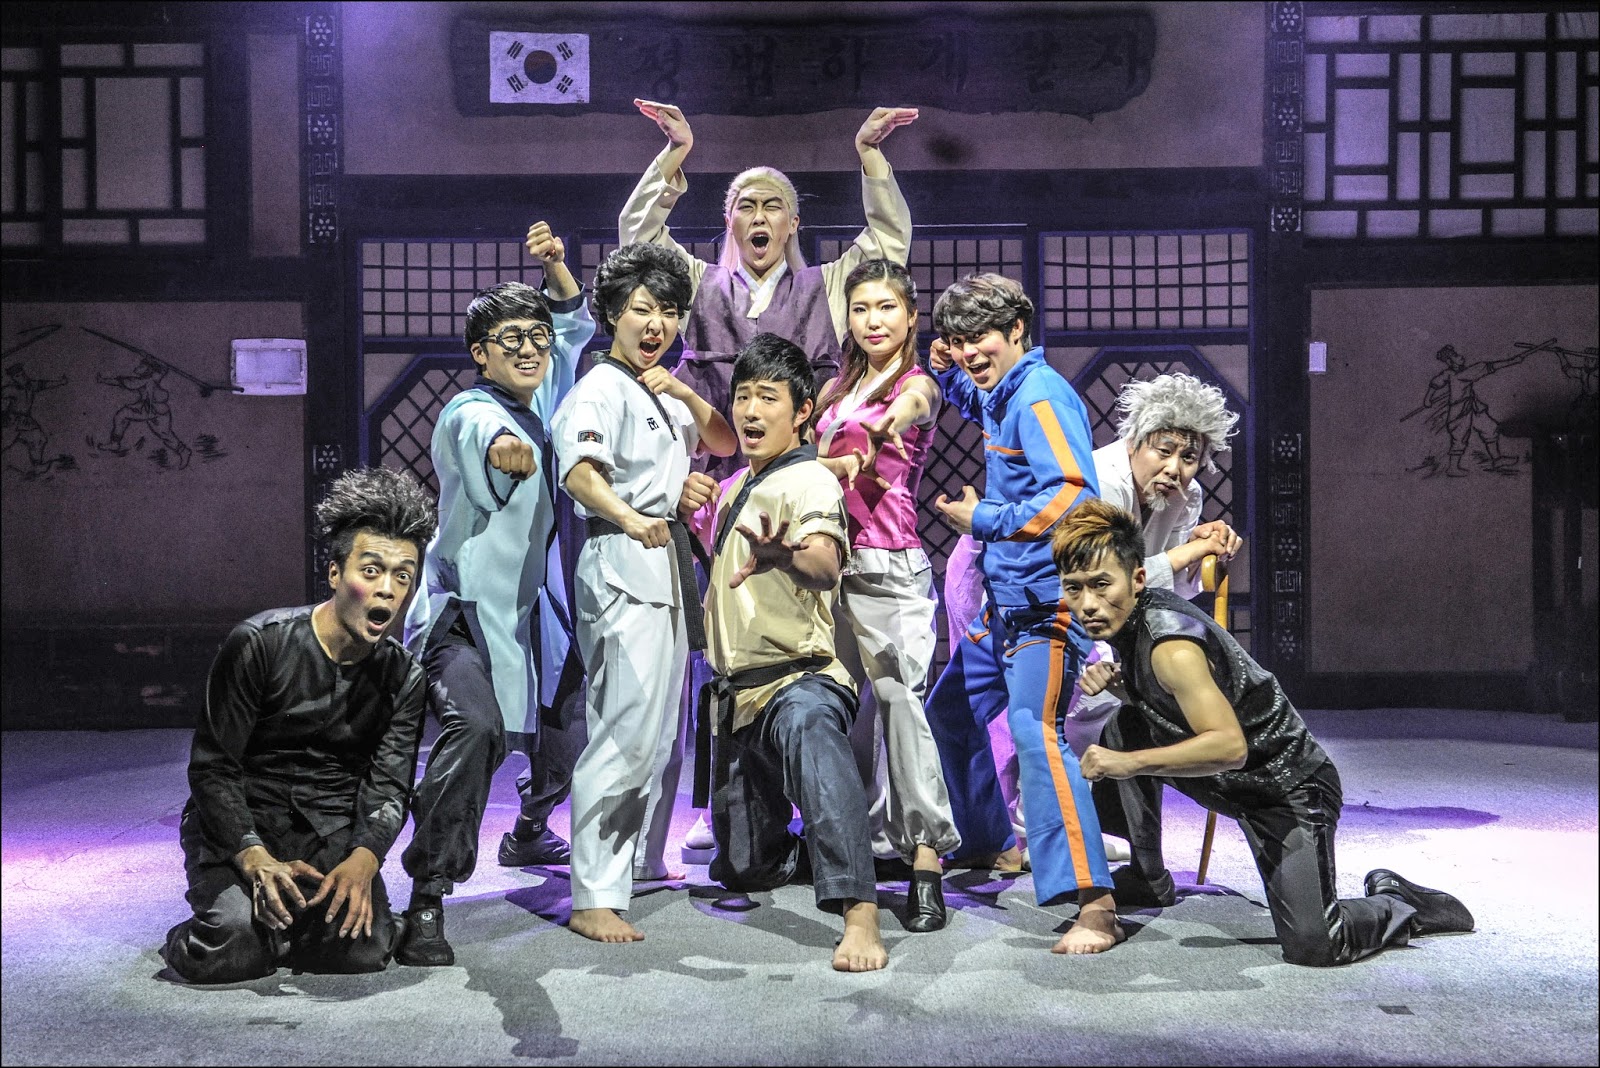 JUMP show Seoul South Korea comedy martial art show